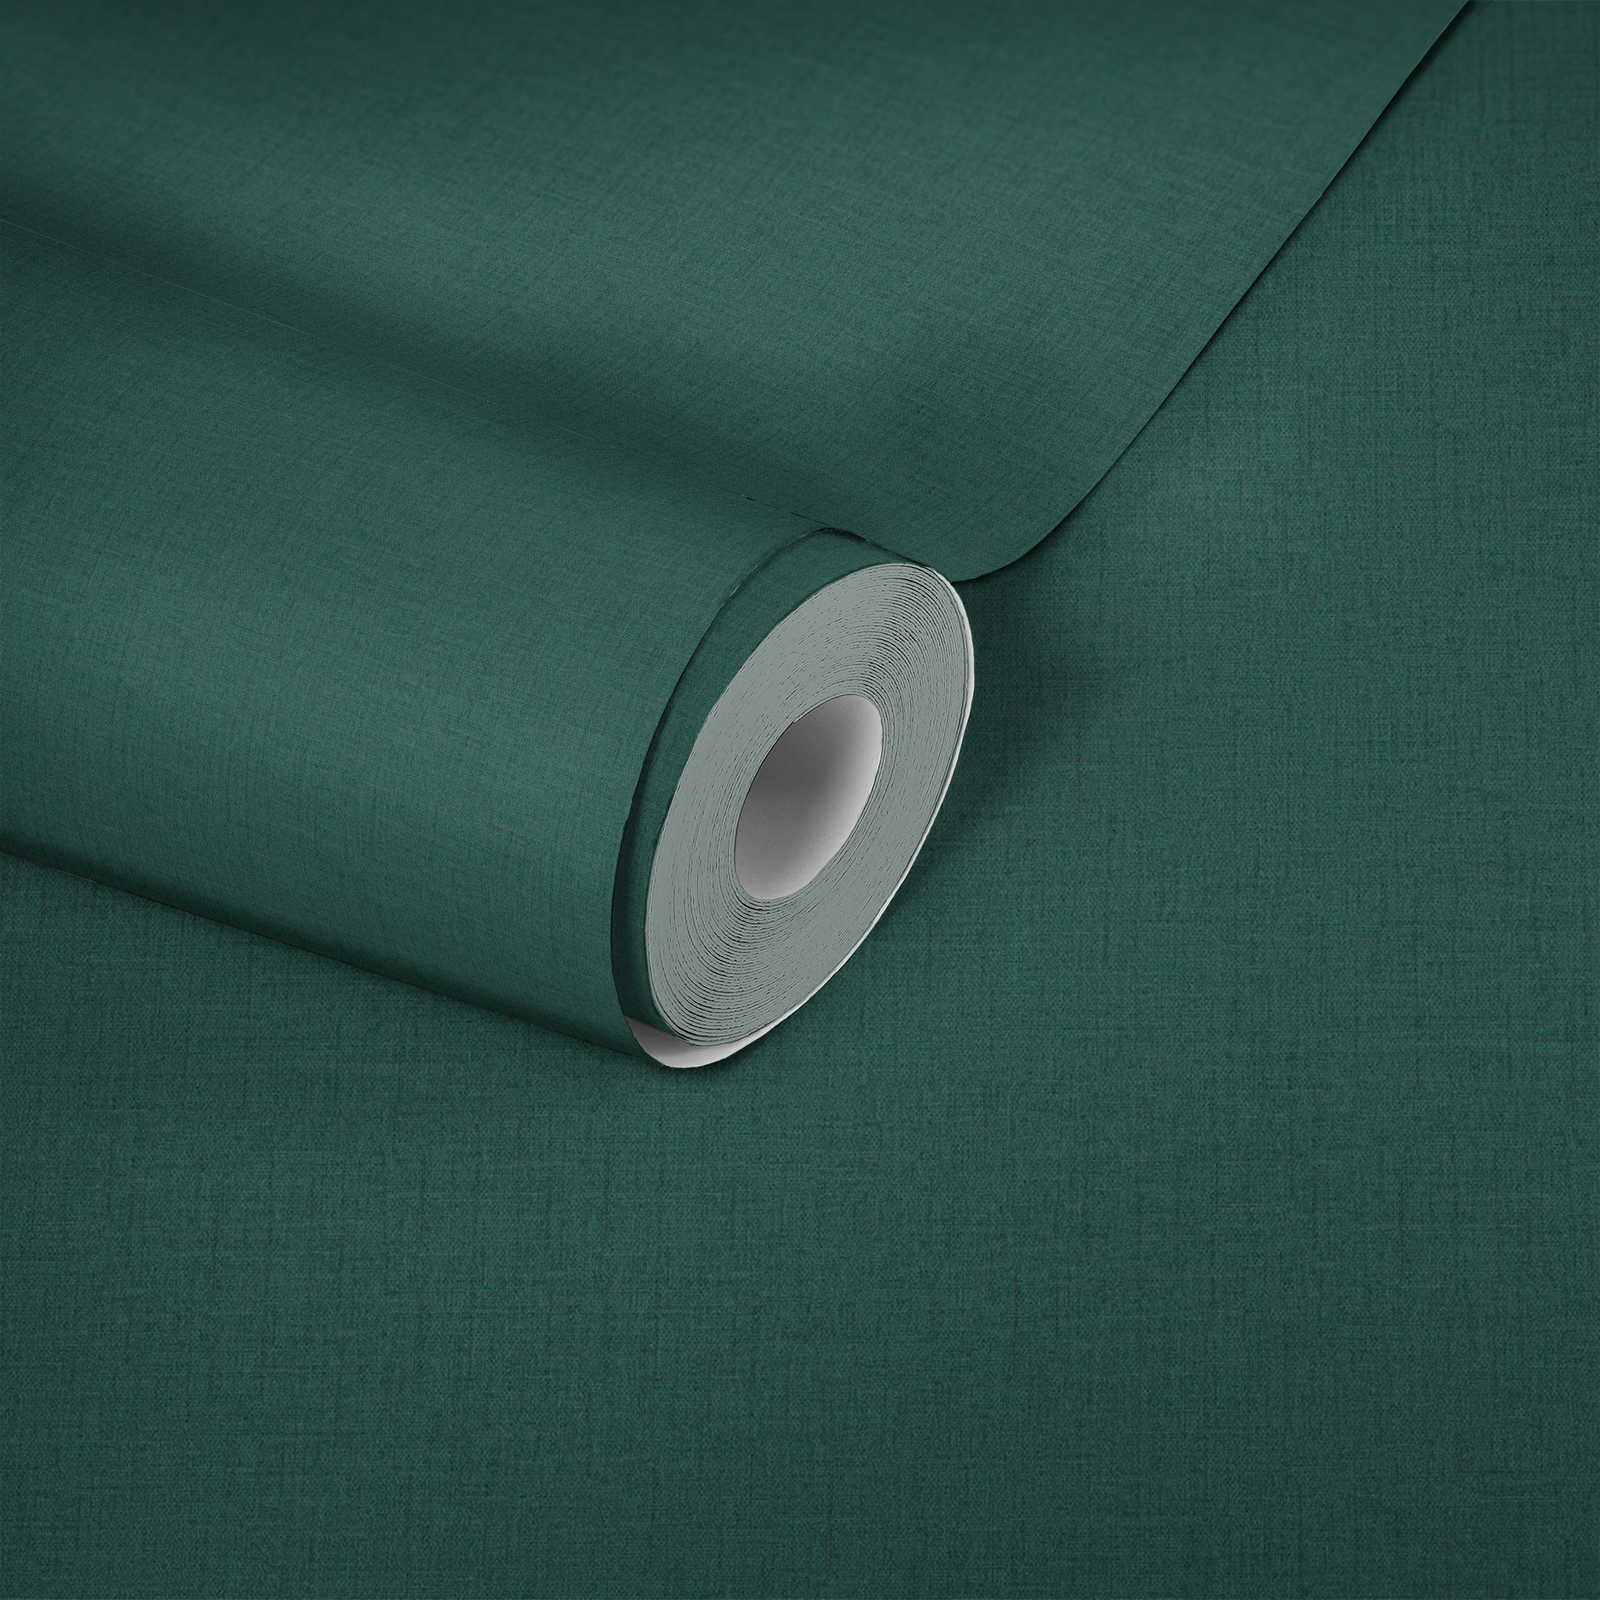             Fir green non-woven wallpaper with textile texture - green
        